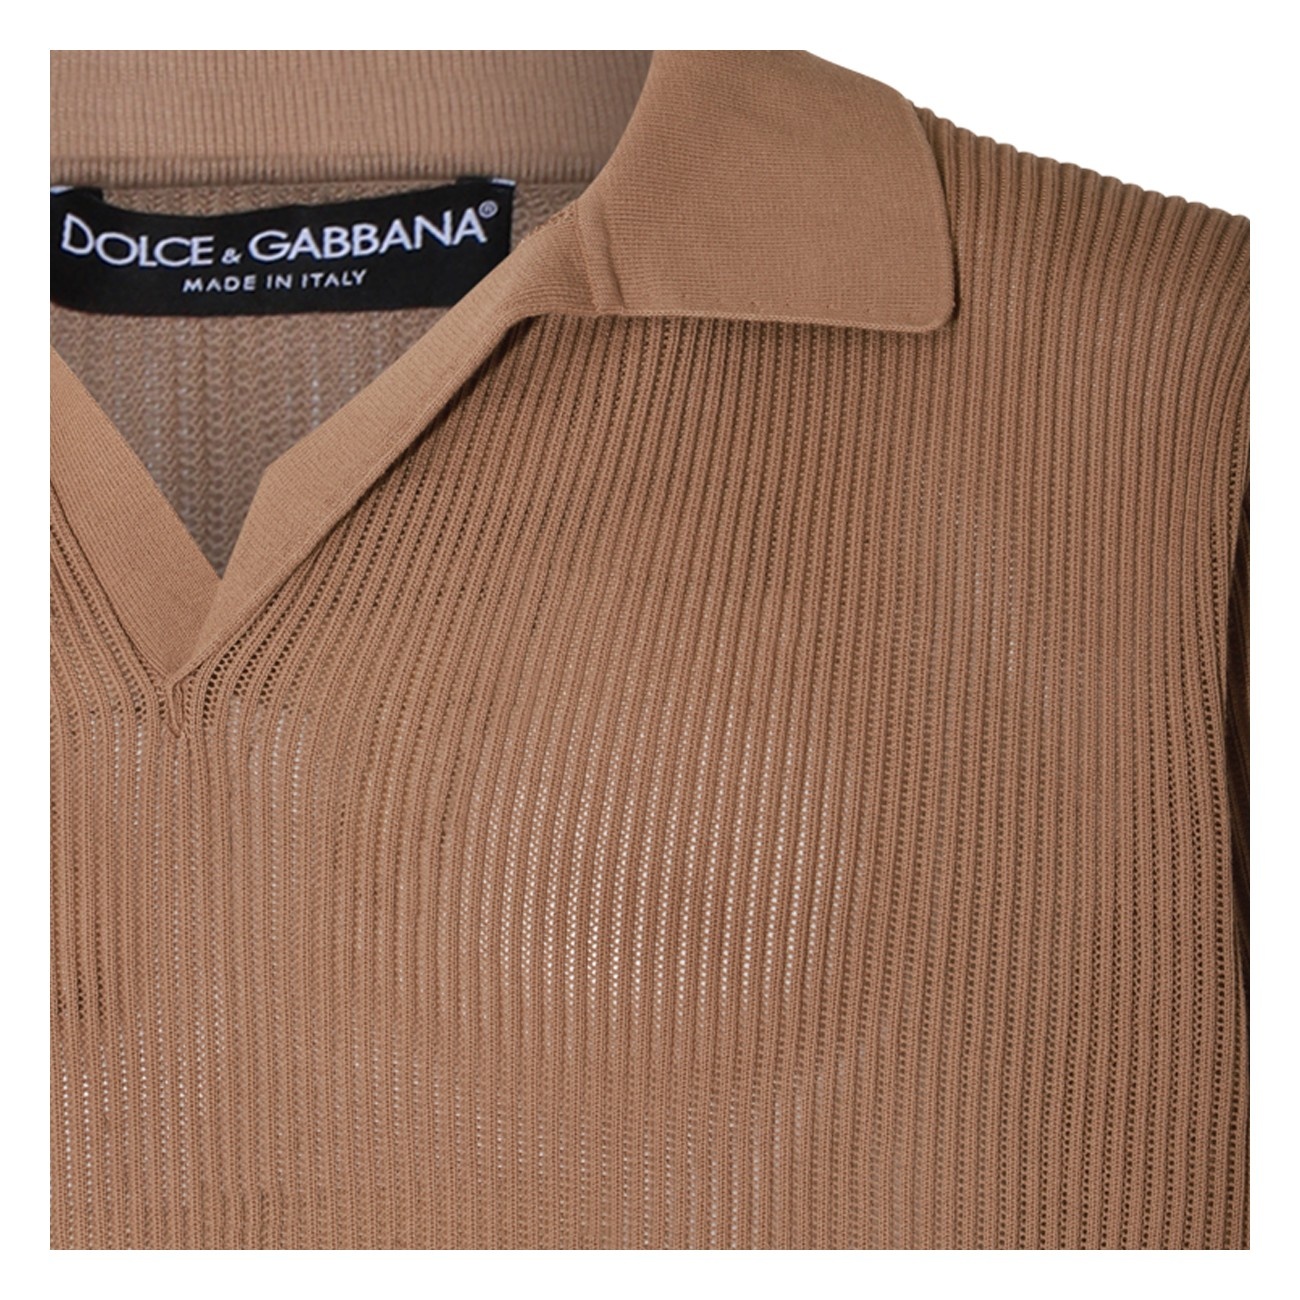 camel cotton polo shirt - 3